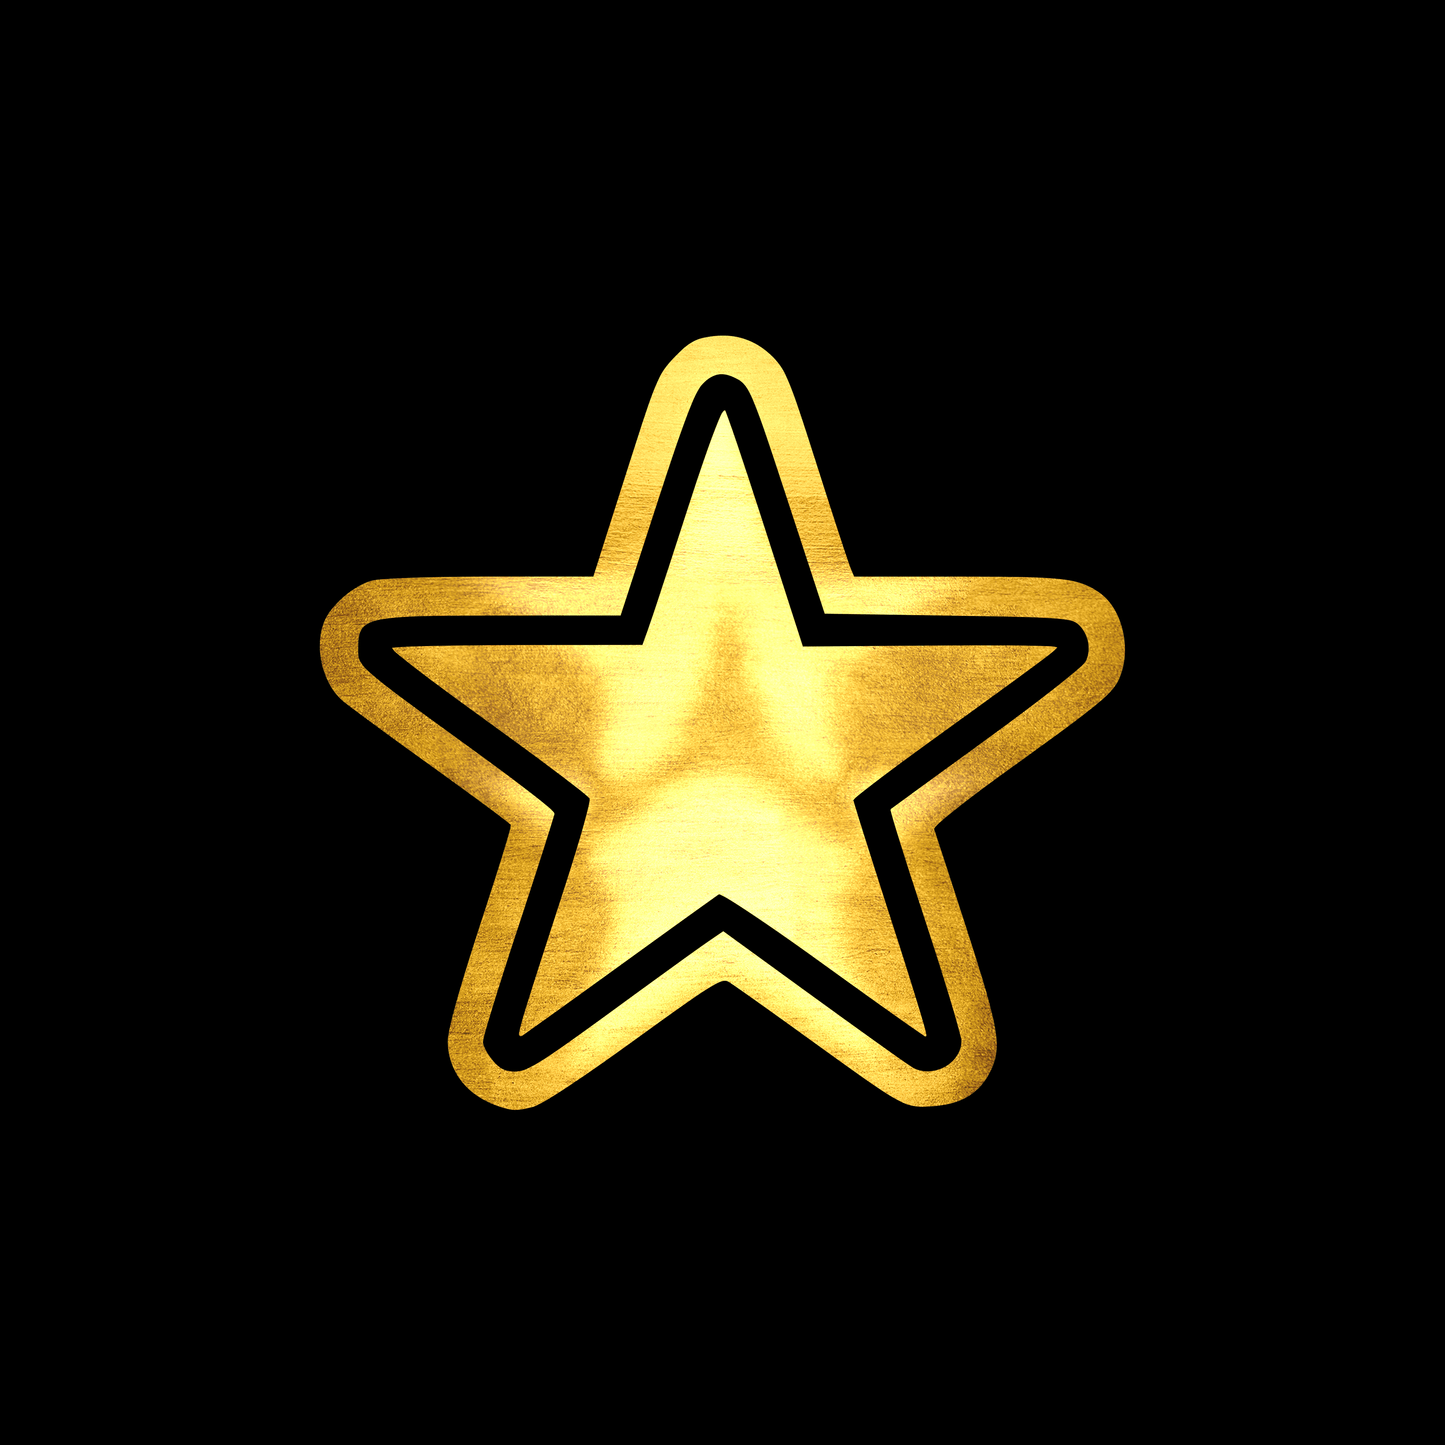 Star 2 sticker decal